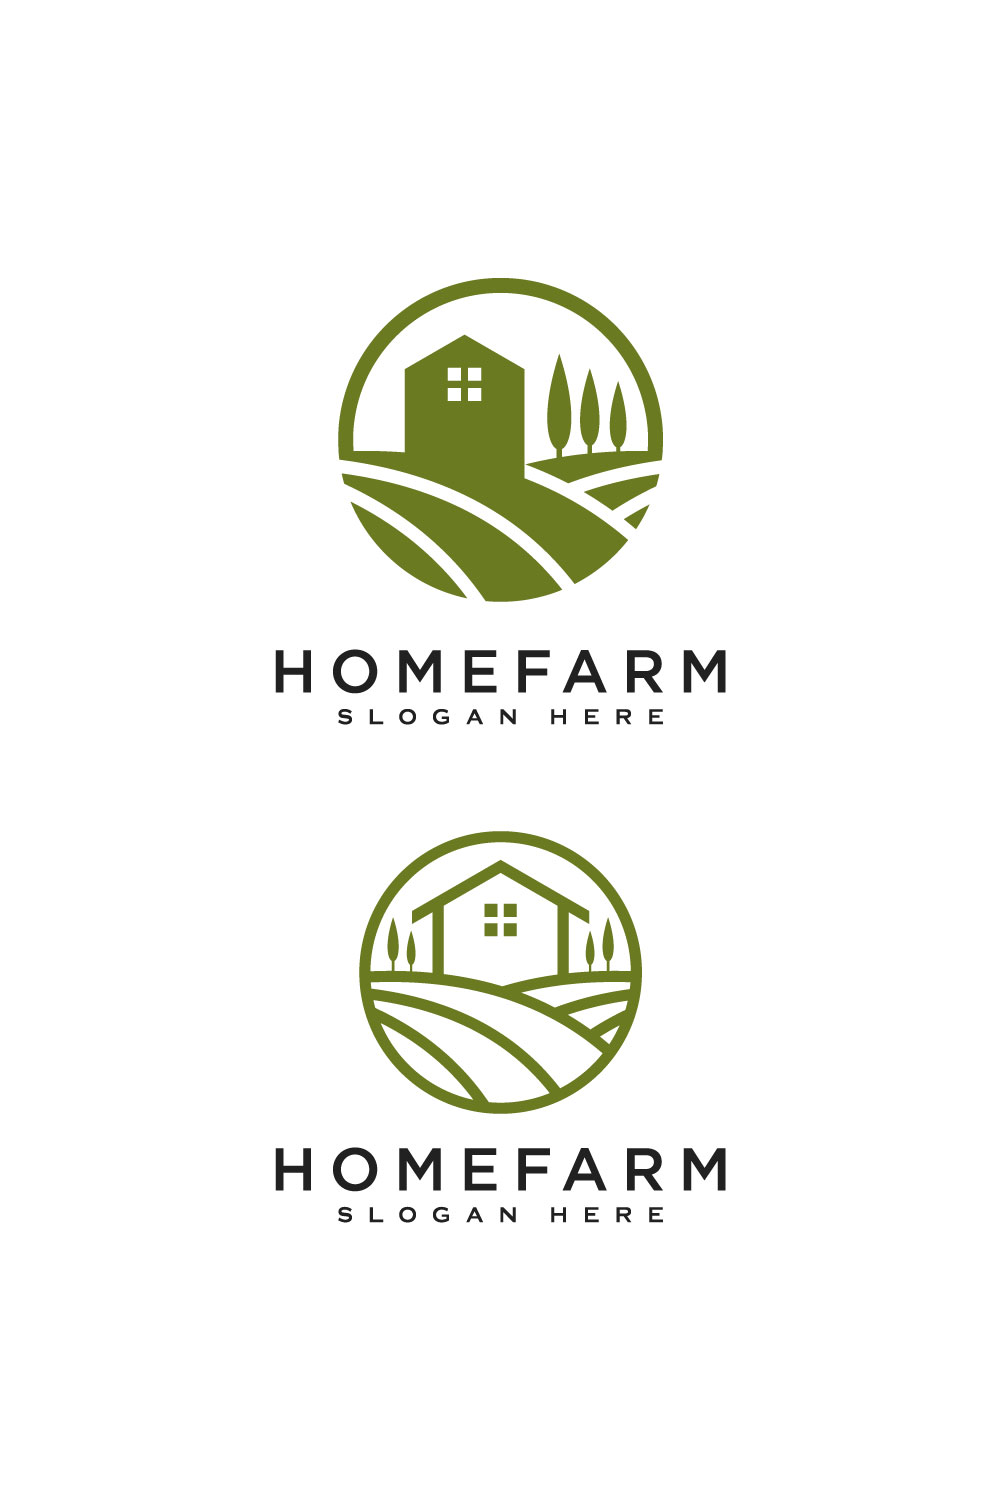 Home Farm Logo Vector Design pinterest.